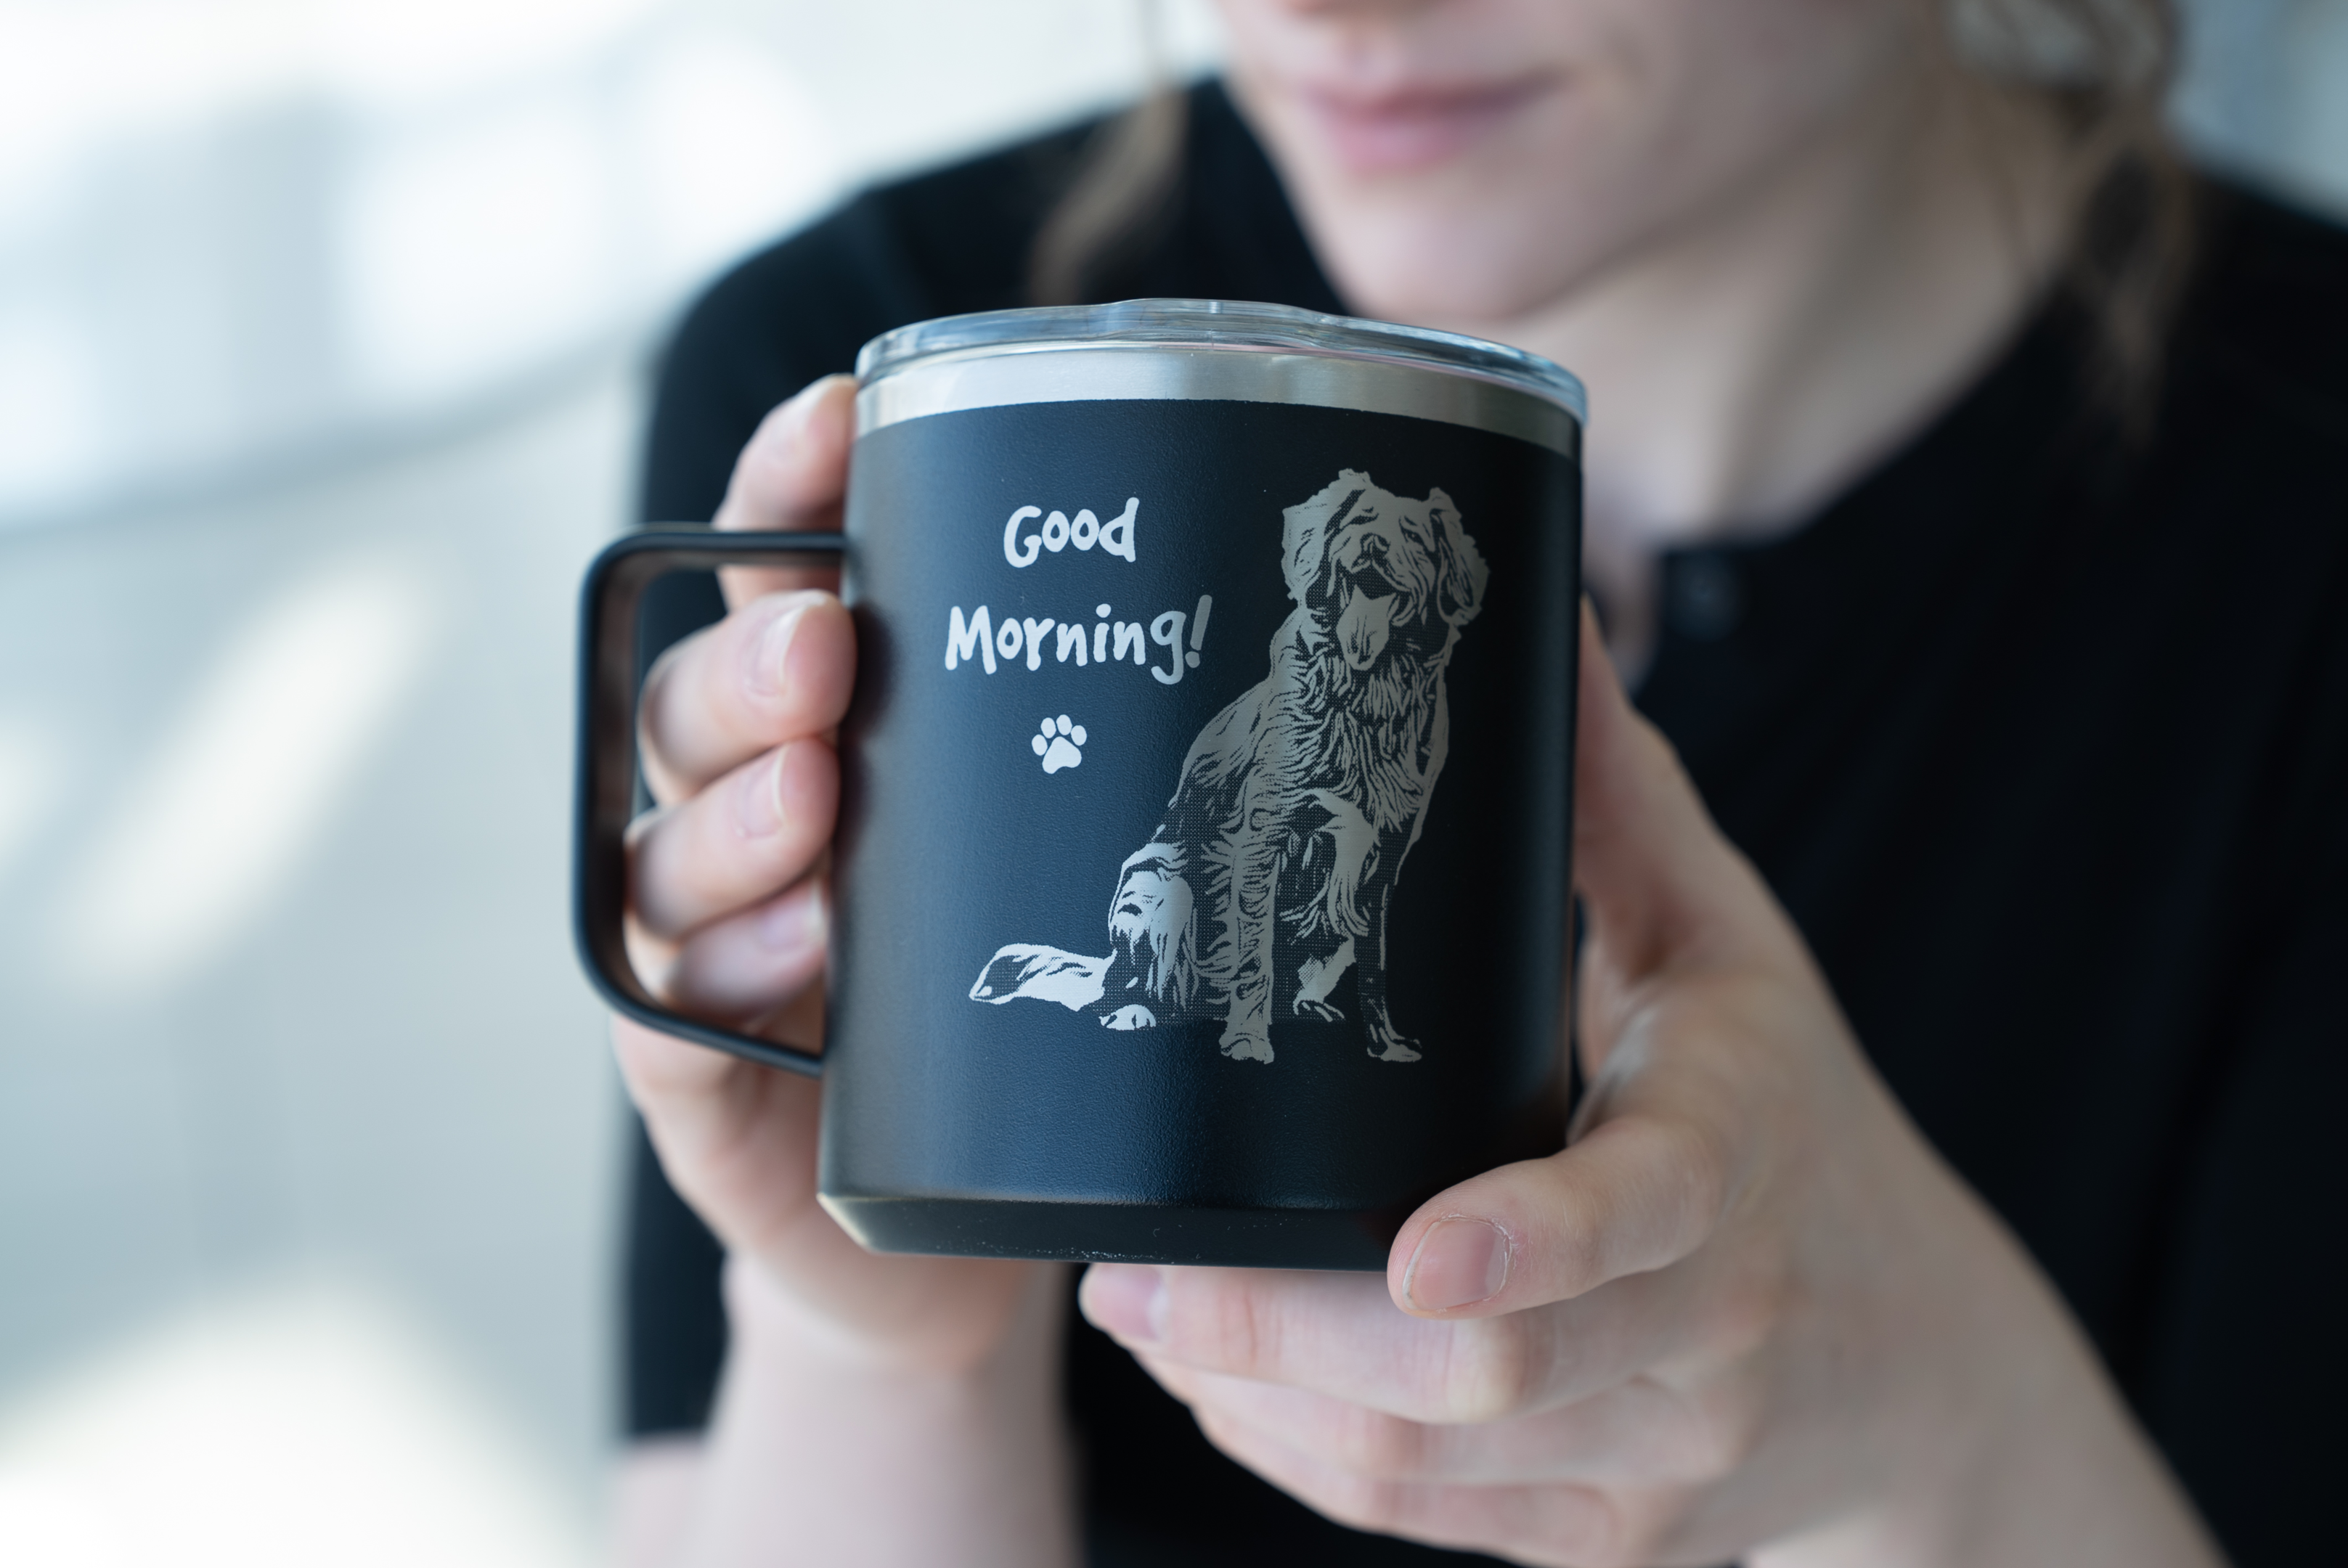 Personalzied Dog Photo Custom Mug with Good Morning 